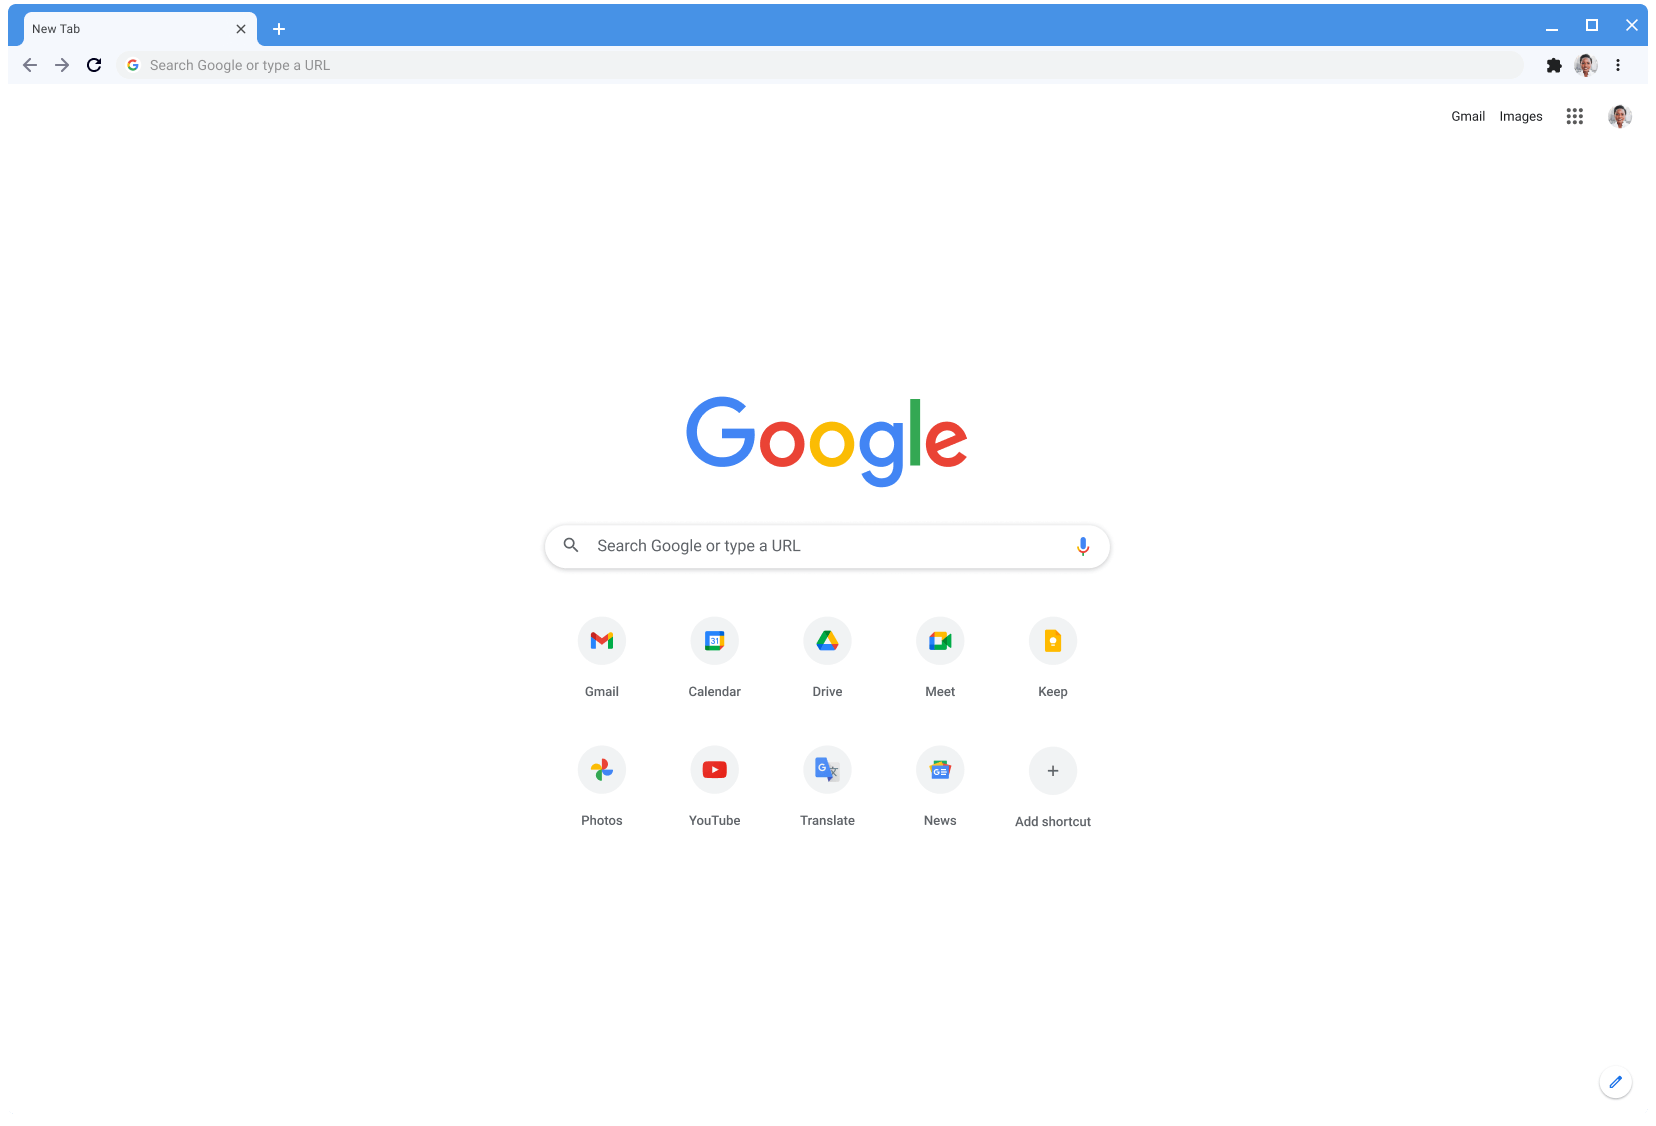 Finestra del navegador Chrome que mostra Google.com, amb el tema clàssic.